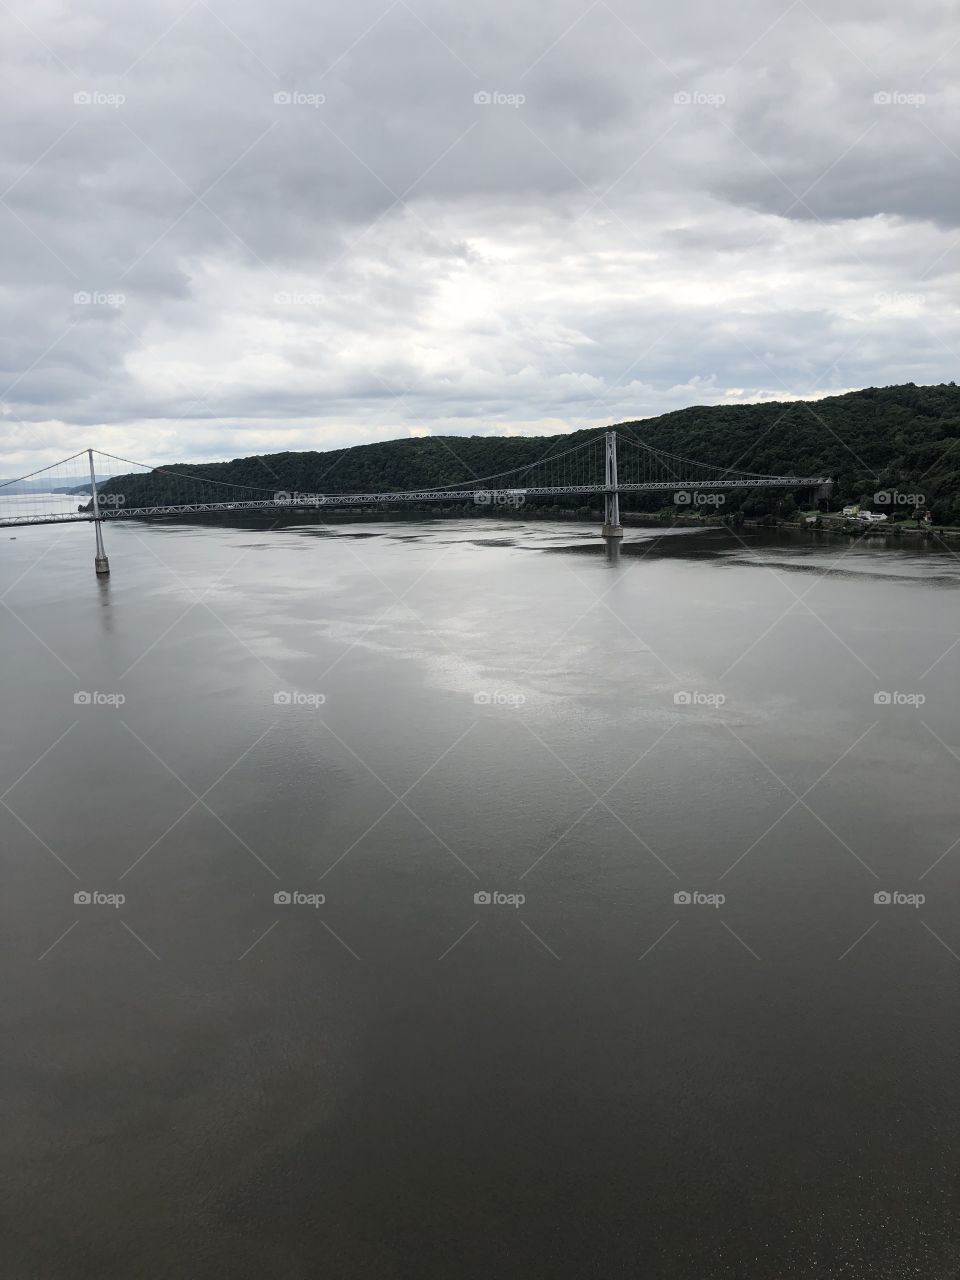 Hudson River and bridge